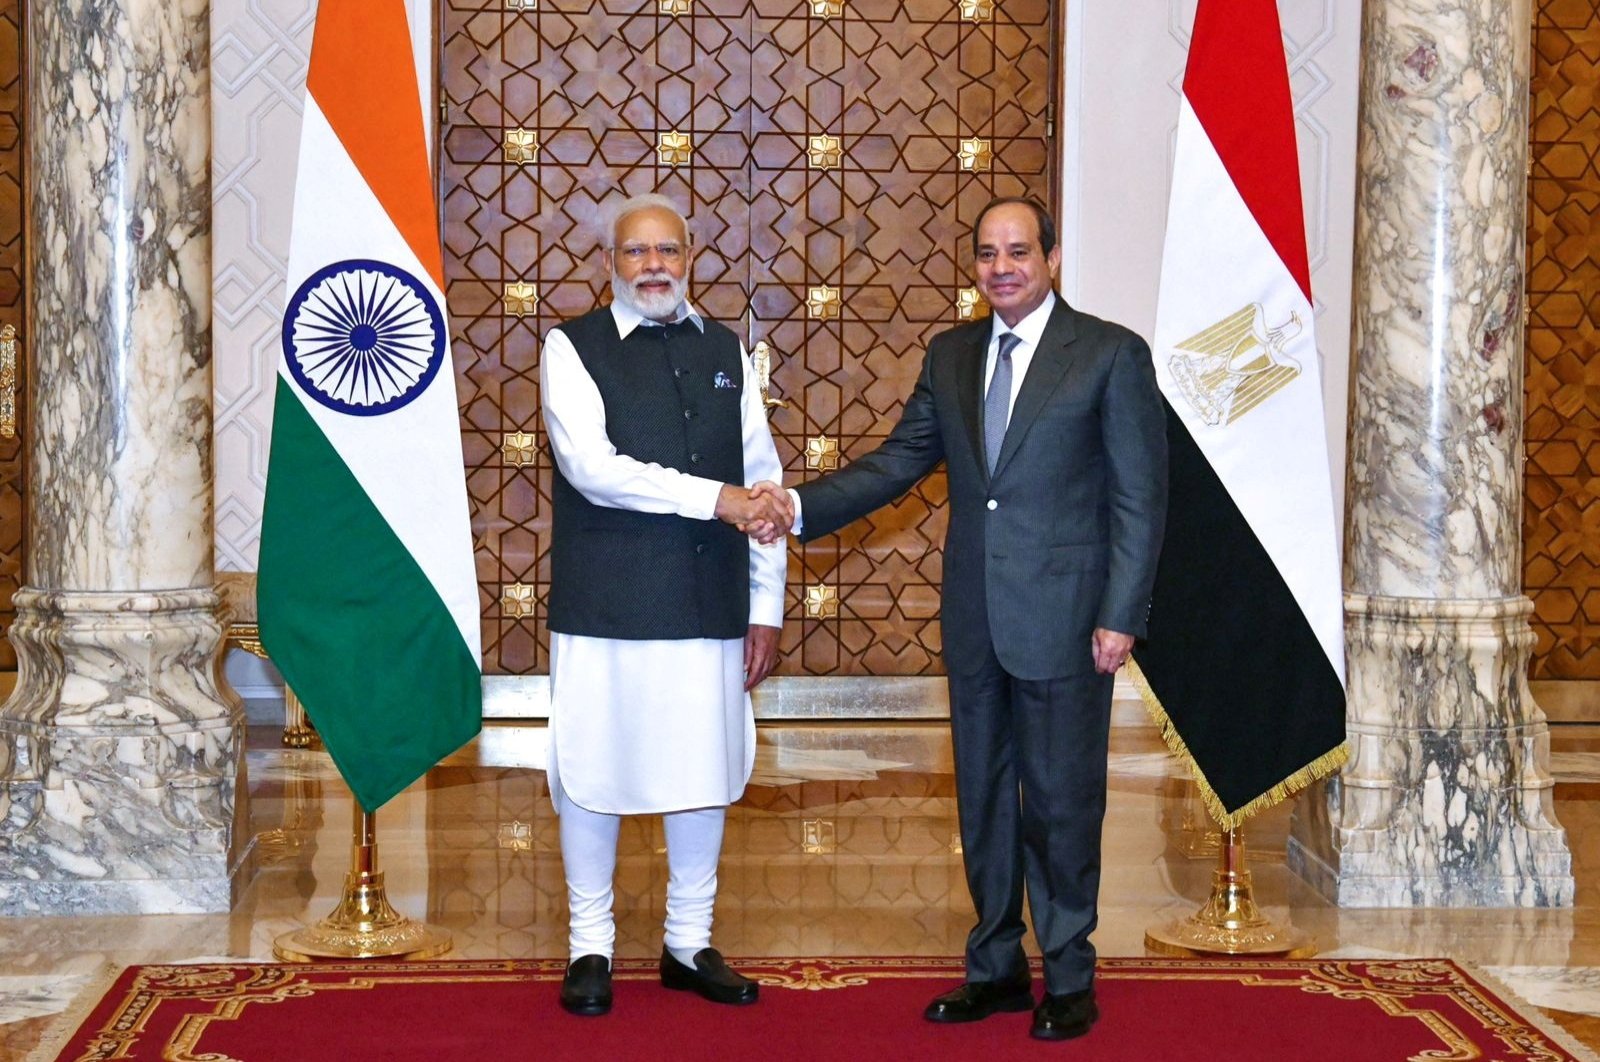 Kairo-Delhi meningkatkan hubungan saat Modi dari India menandai kunjungan pertamanya ke Mesir